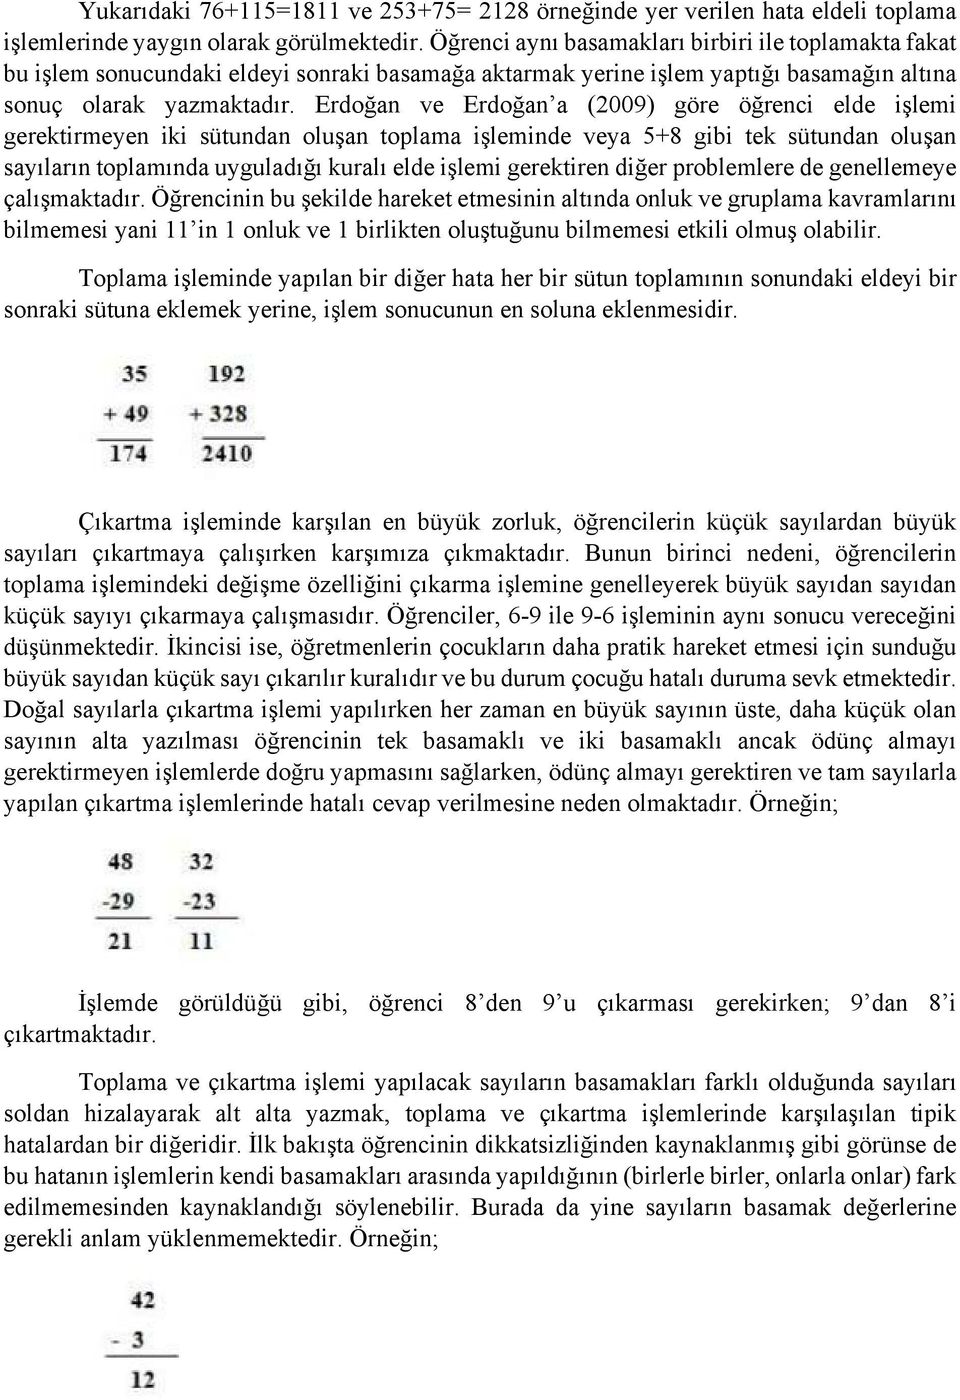 Erdoğan ve Erdoğan a (009) göre öğrenci elde işlemi gerektirmeyen iki sütundan oluşan toplama işleminde veya 5+8 gibi tek sütundan oluşan sayıların toplamında uyguladığı kuralı elde işlemi gerektiren